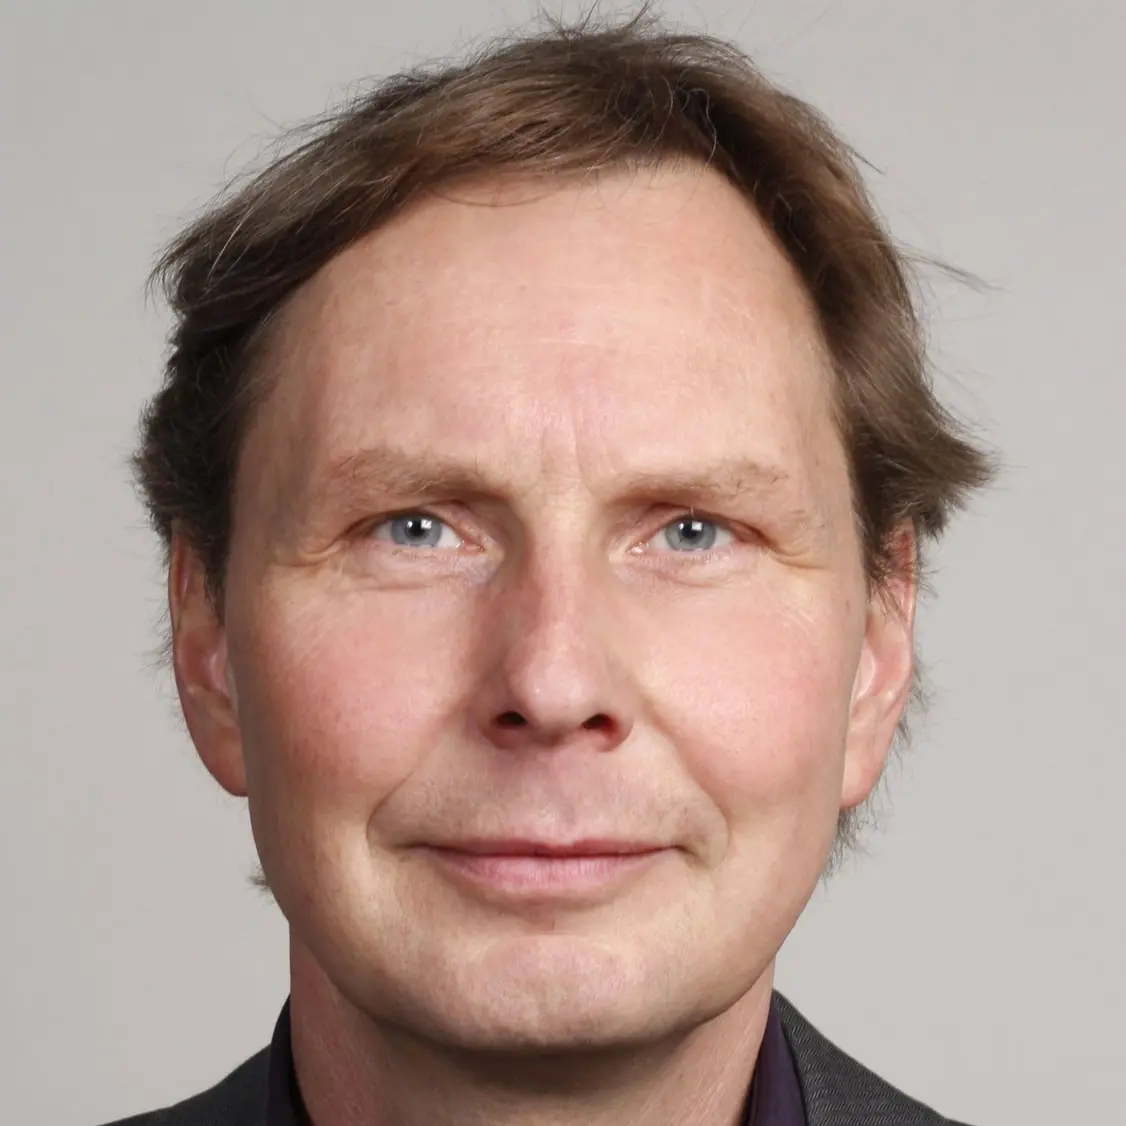 Hannes Koch im Porträt.